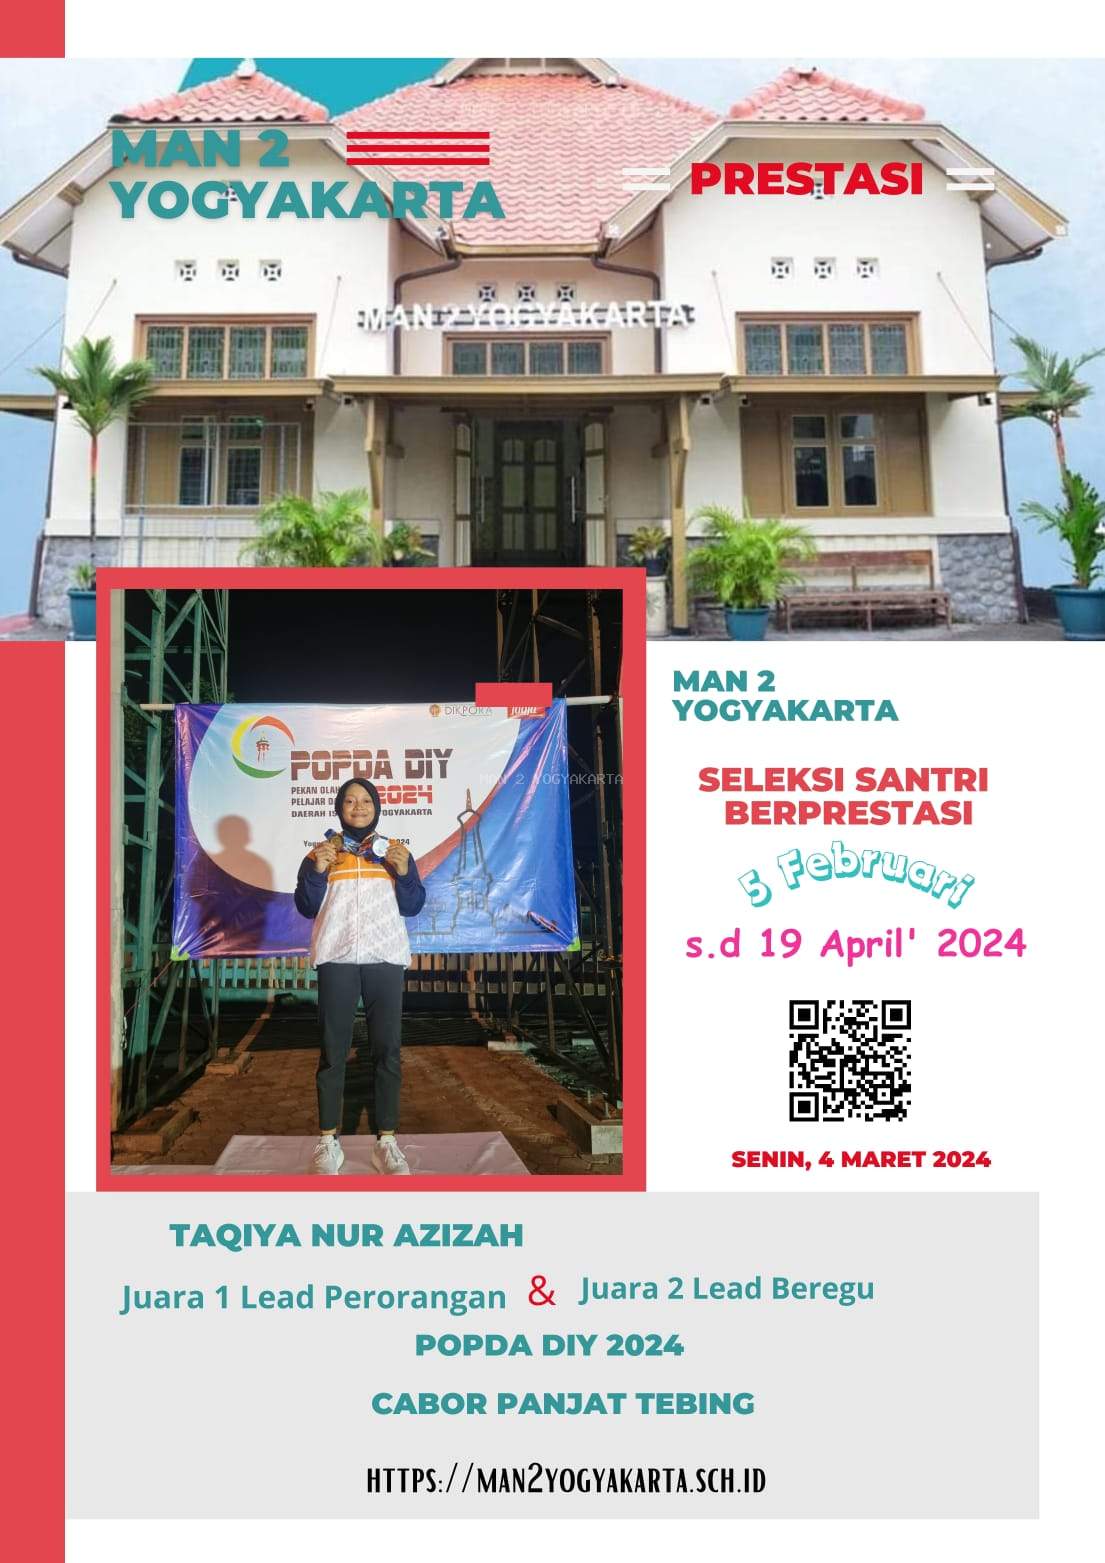  Taqiya Nur Azizah Siswa KKO MAN 2 Yogyakarta Juara 1 Lead Perorangan dan Juara 2 Lead Beregu POPDA DIY 2024 Cabor Panjat Tebing